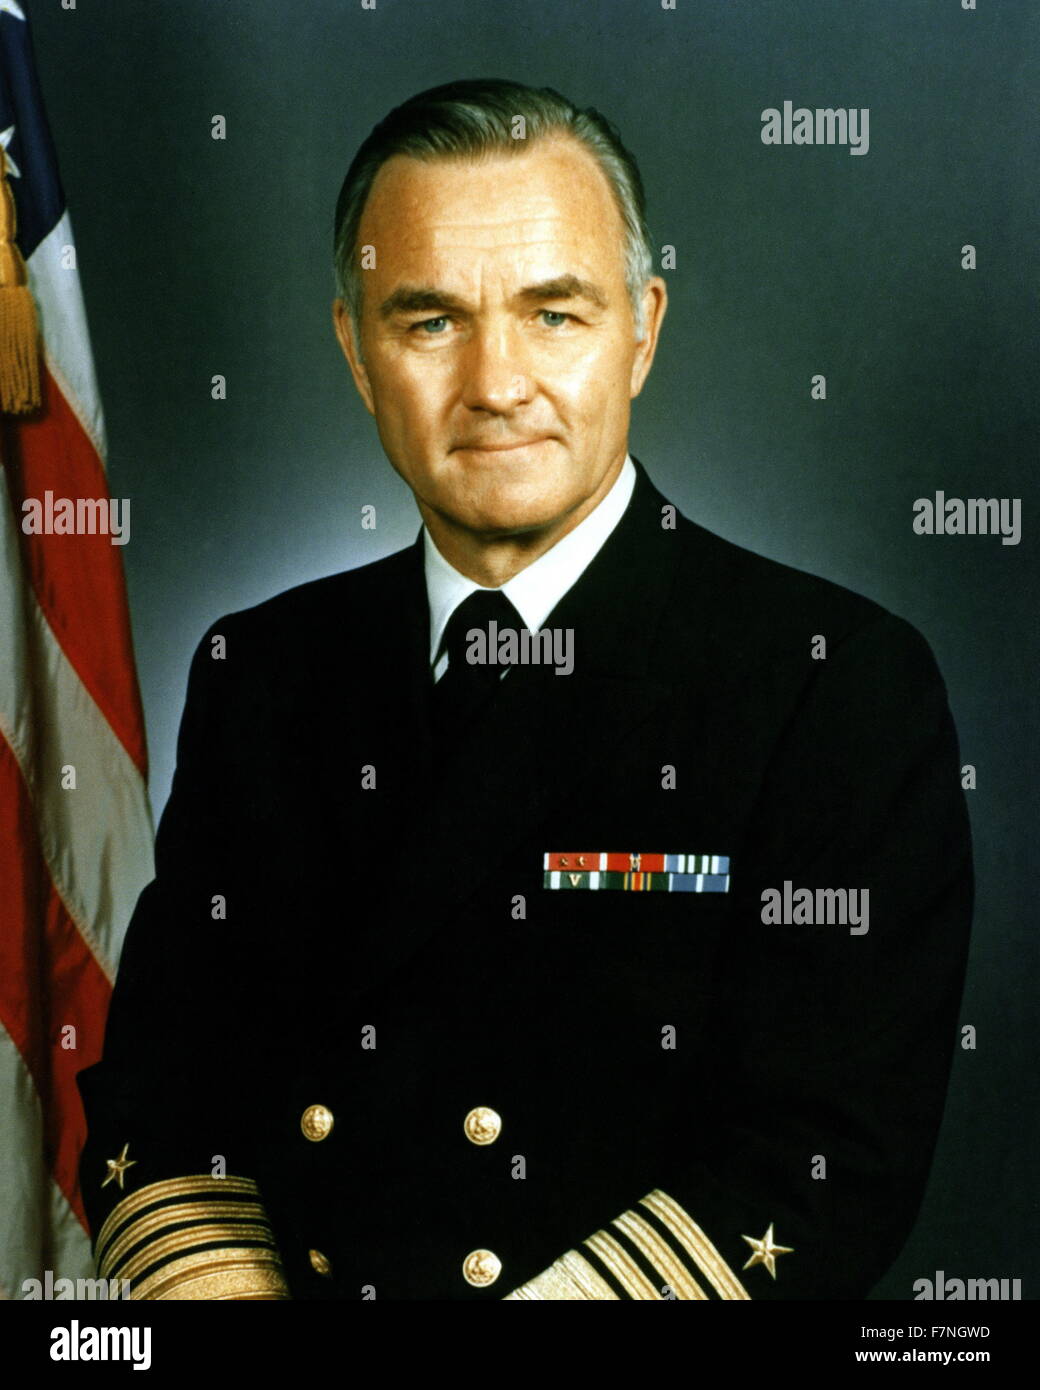 Photographie de Stansfield Turner (1923-) Directeur de l'Agence centrale du renseignement et président de la Naval War College. Datée 1983 Banque D'Images